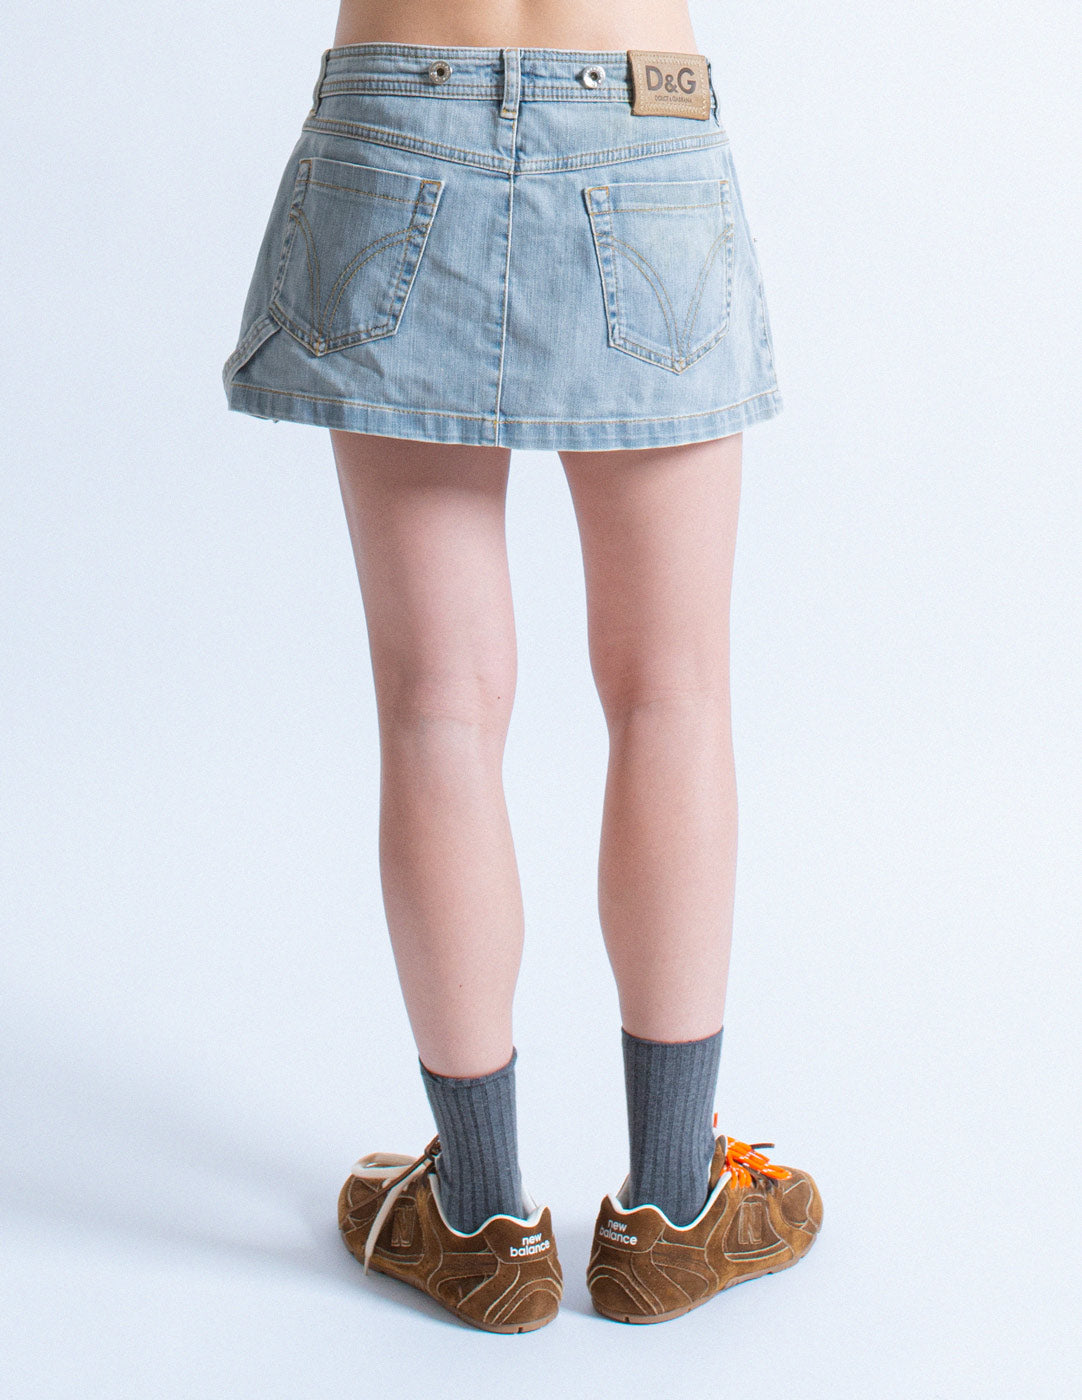 D&G denim mini skirt back detail